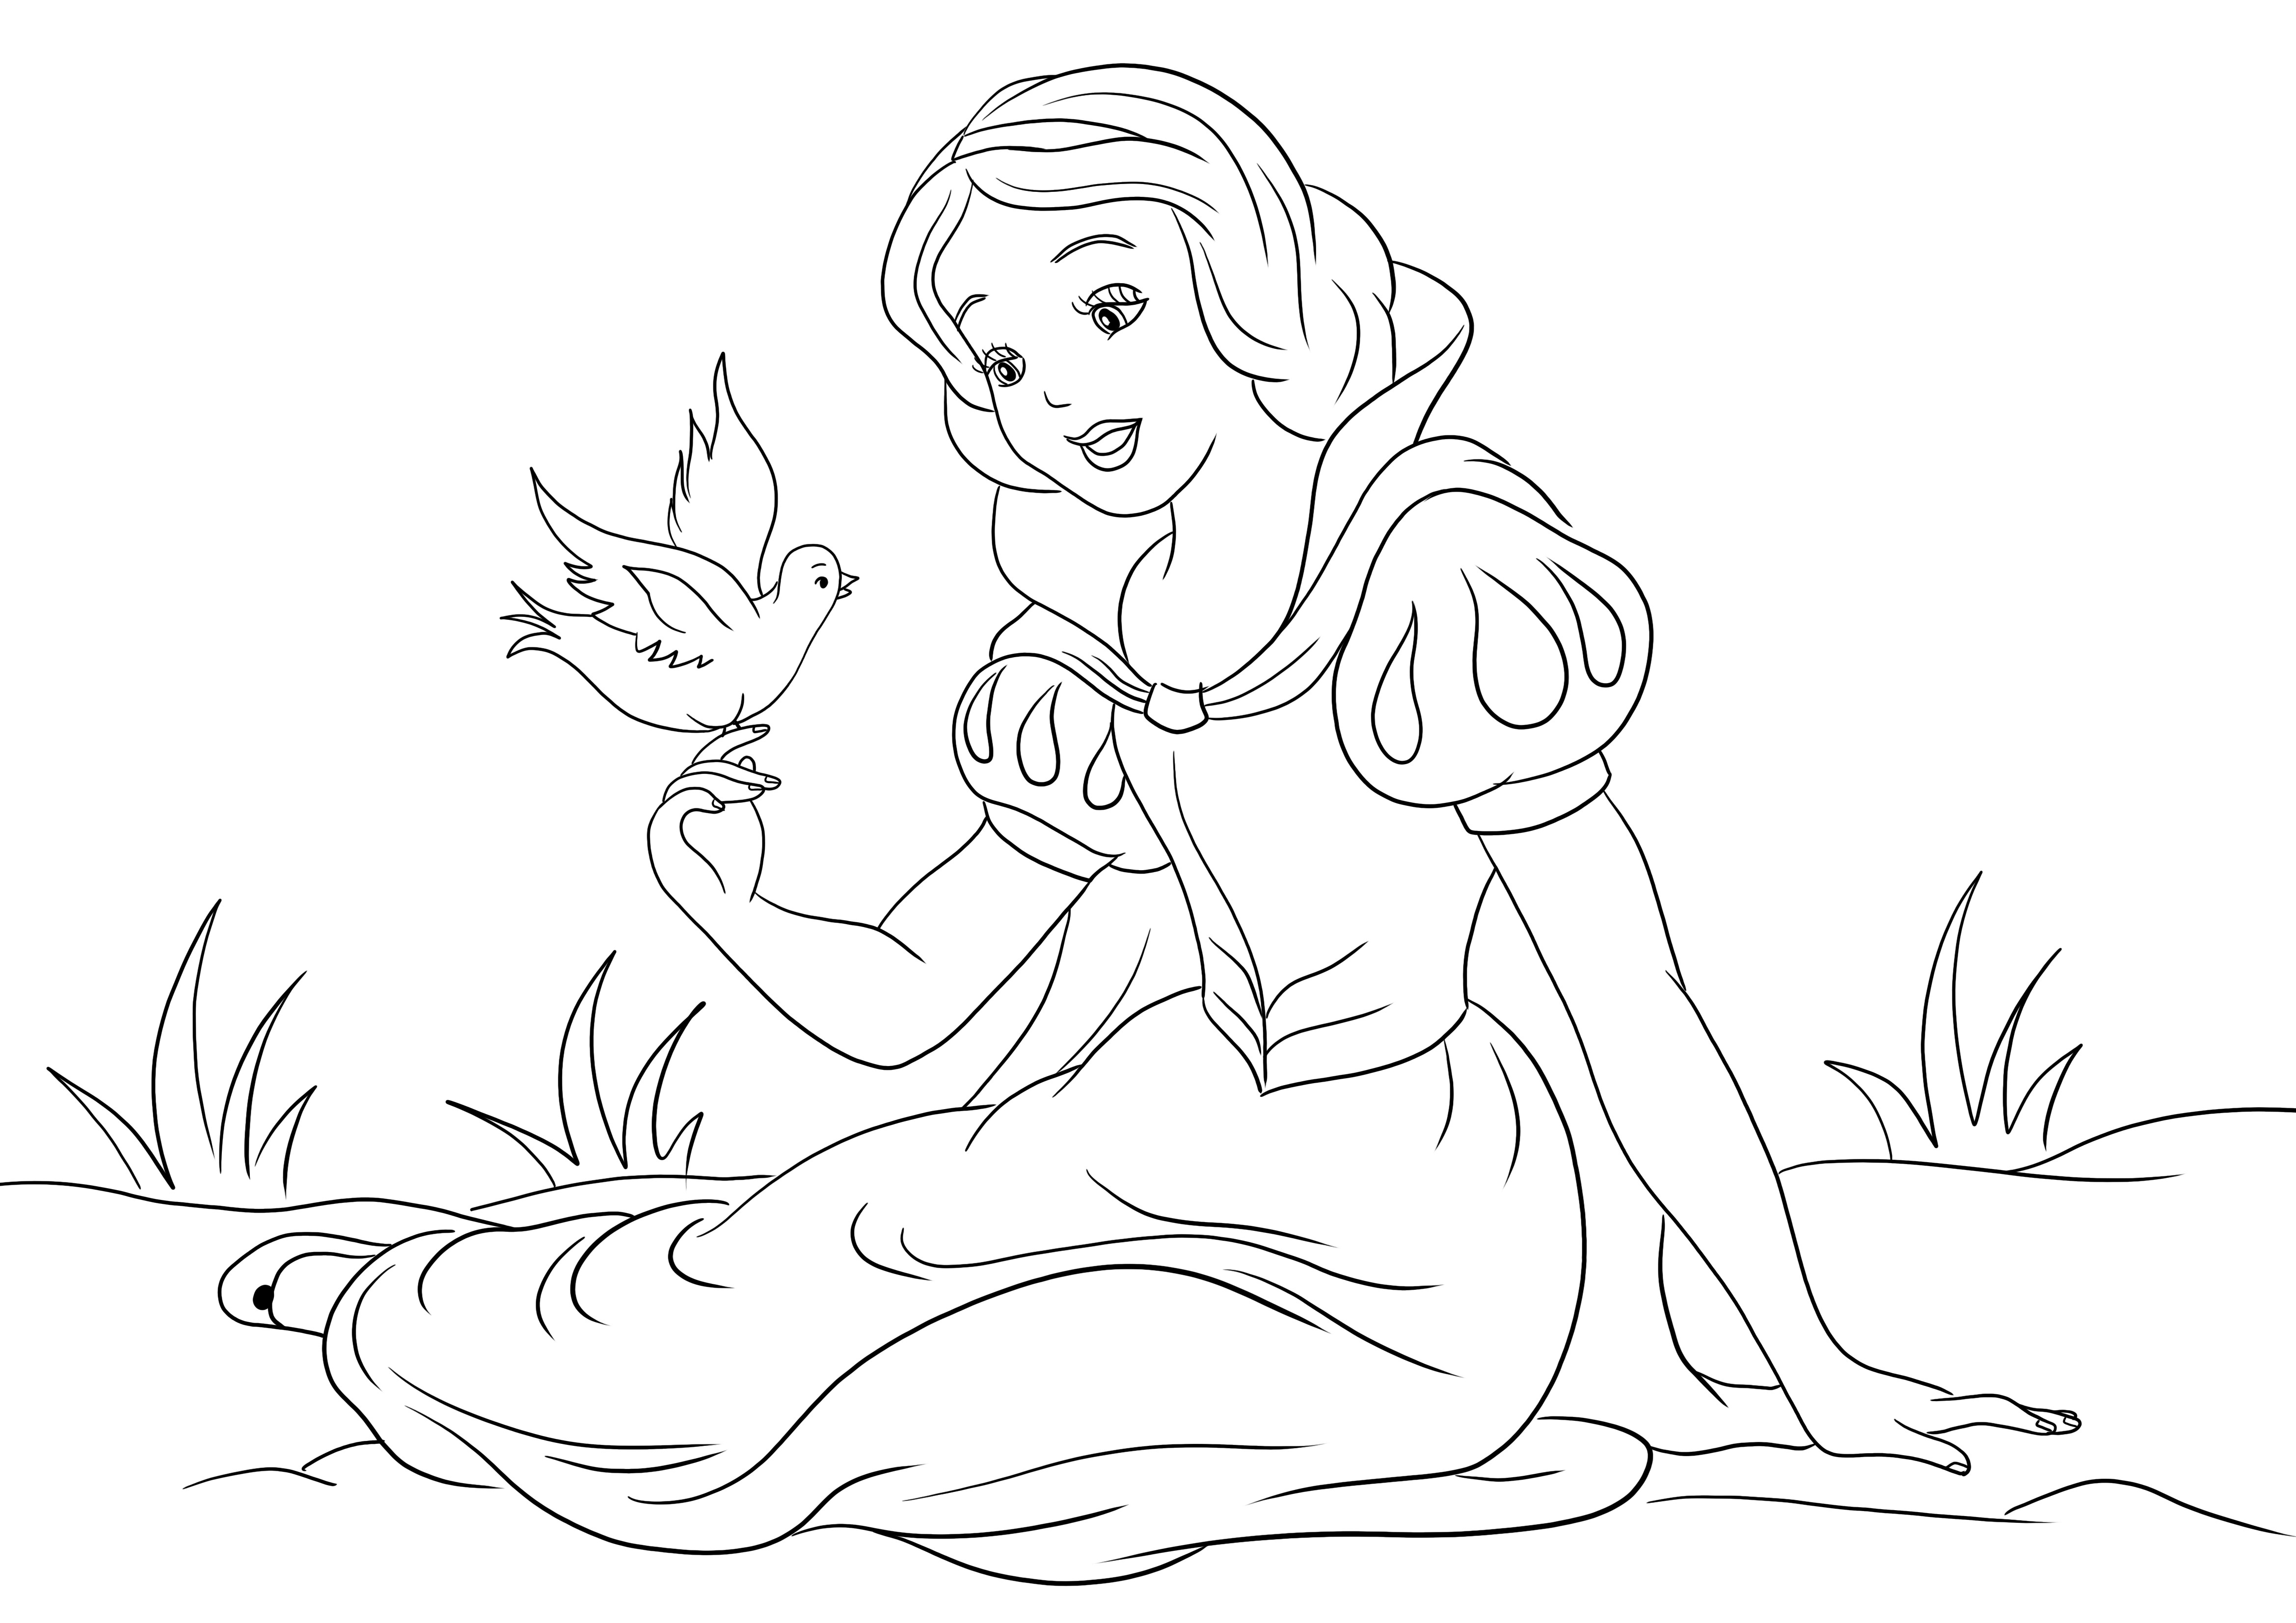 Putri Salju dan Merpati untuk diunduh atau dicetak secara gratis dan diwarnai